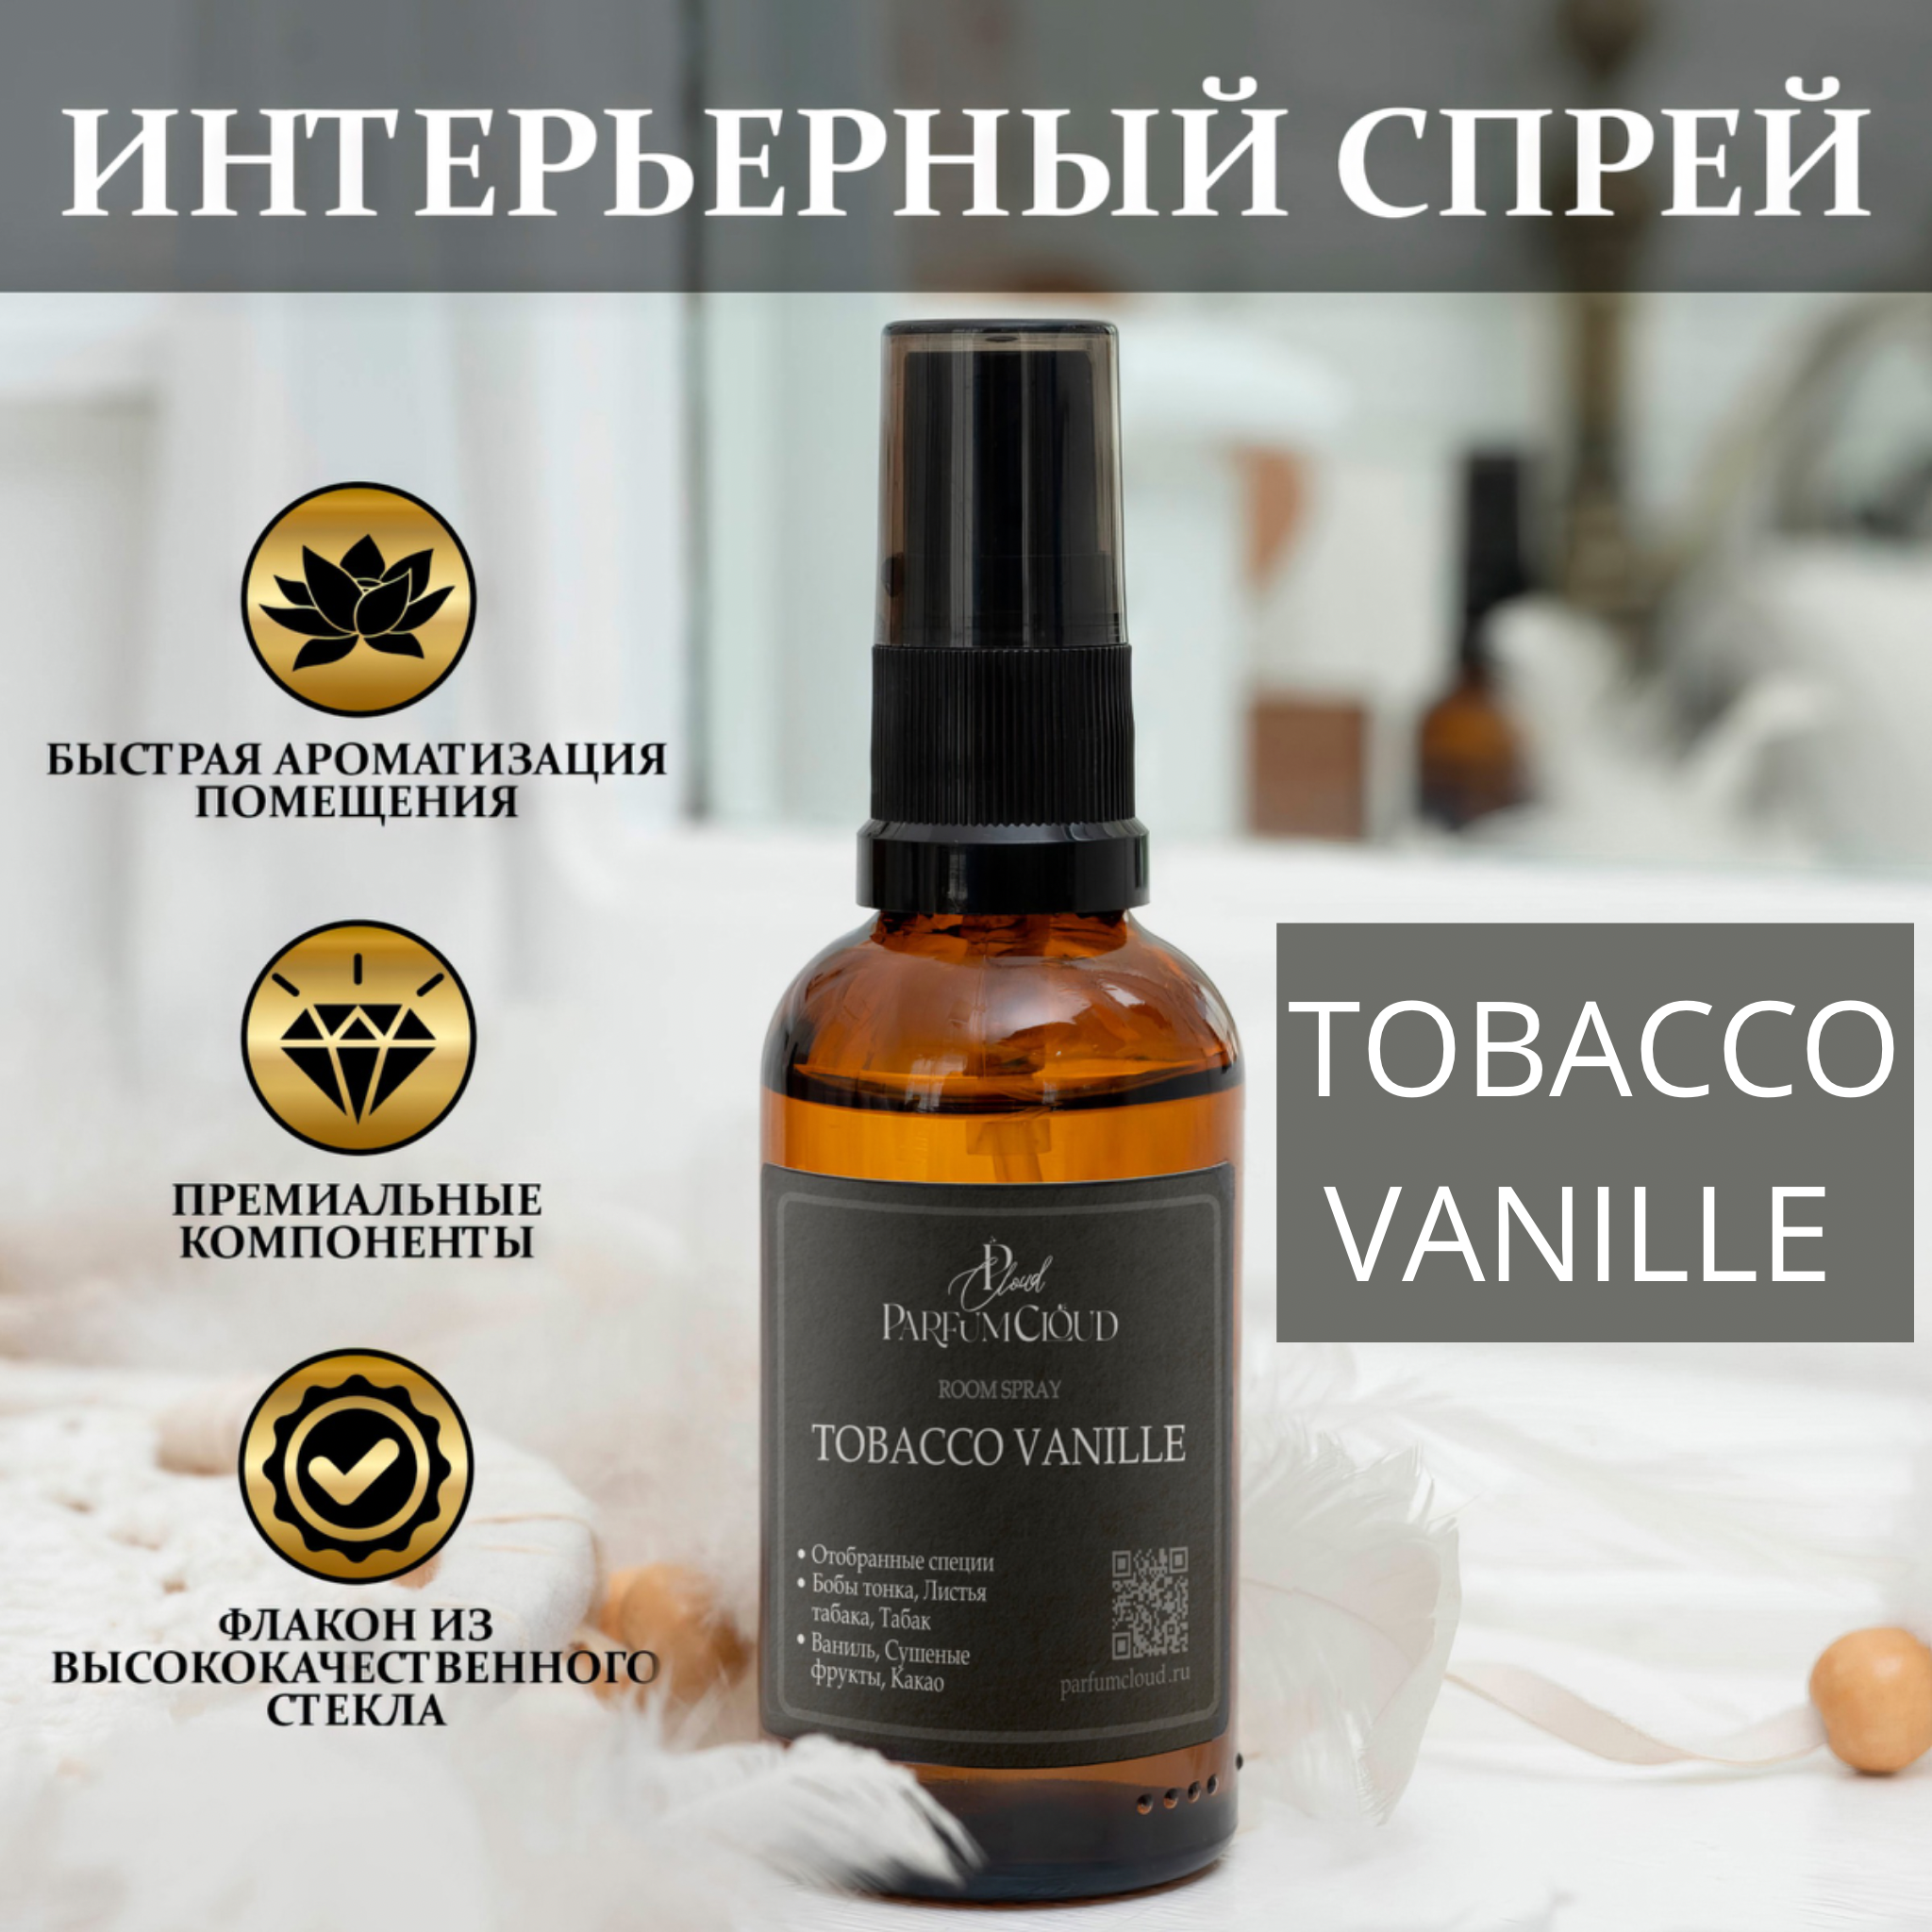 "Табак & Ваниль" Парфюмерный спрей для текстиля, ароматизатор для дома, автомобиля от ParfumCloud, парфюм интерьерный